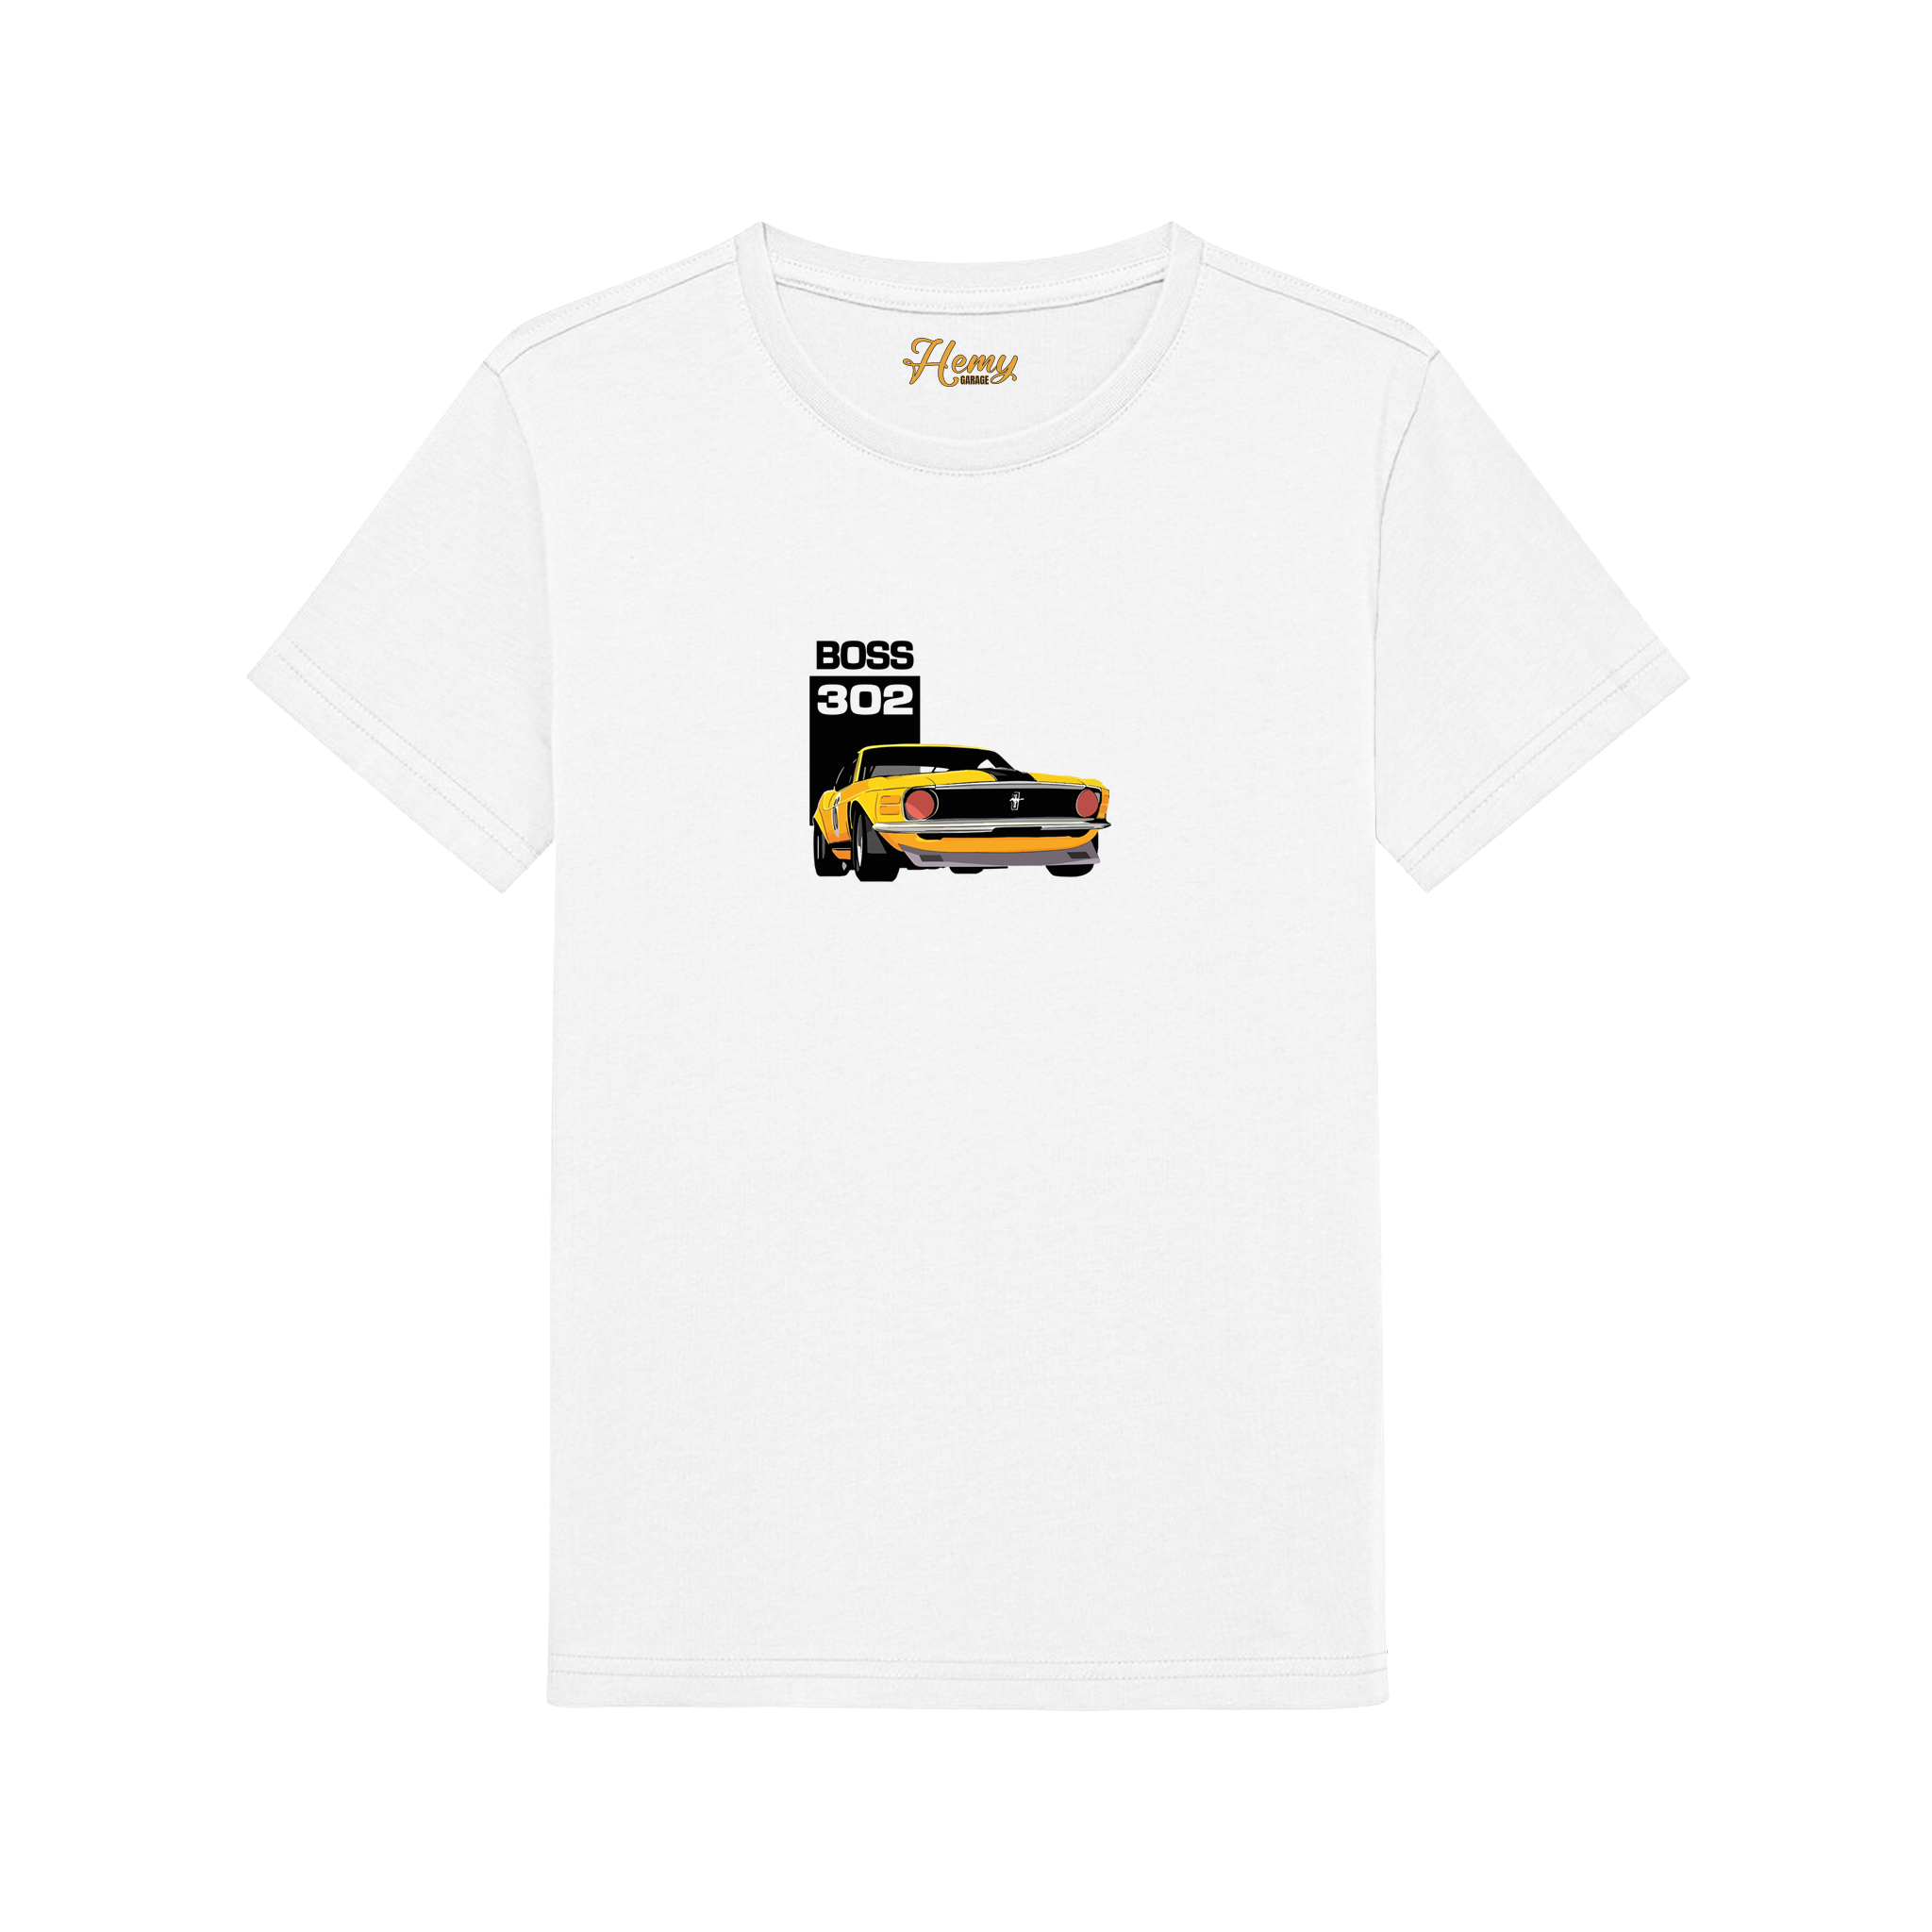 BOSS 302 - Çocuk T-Shirt